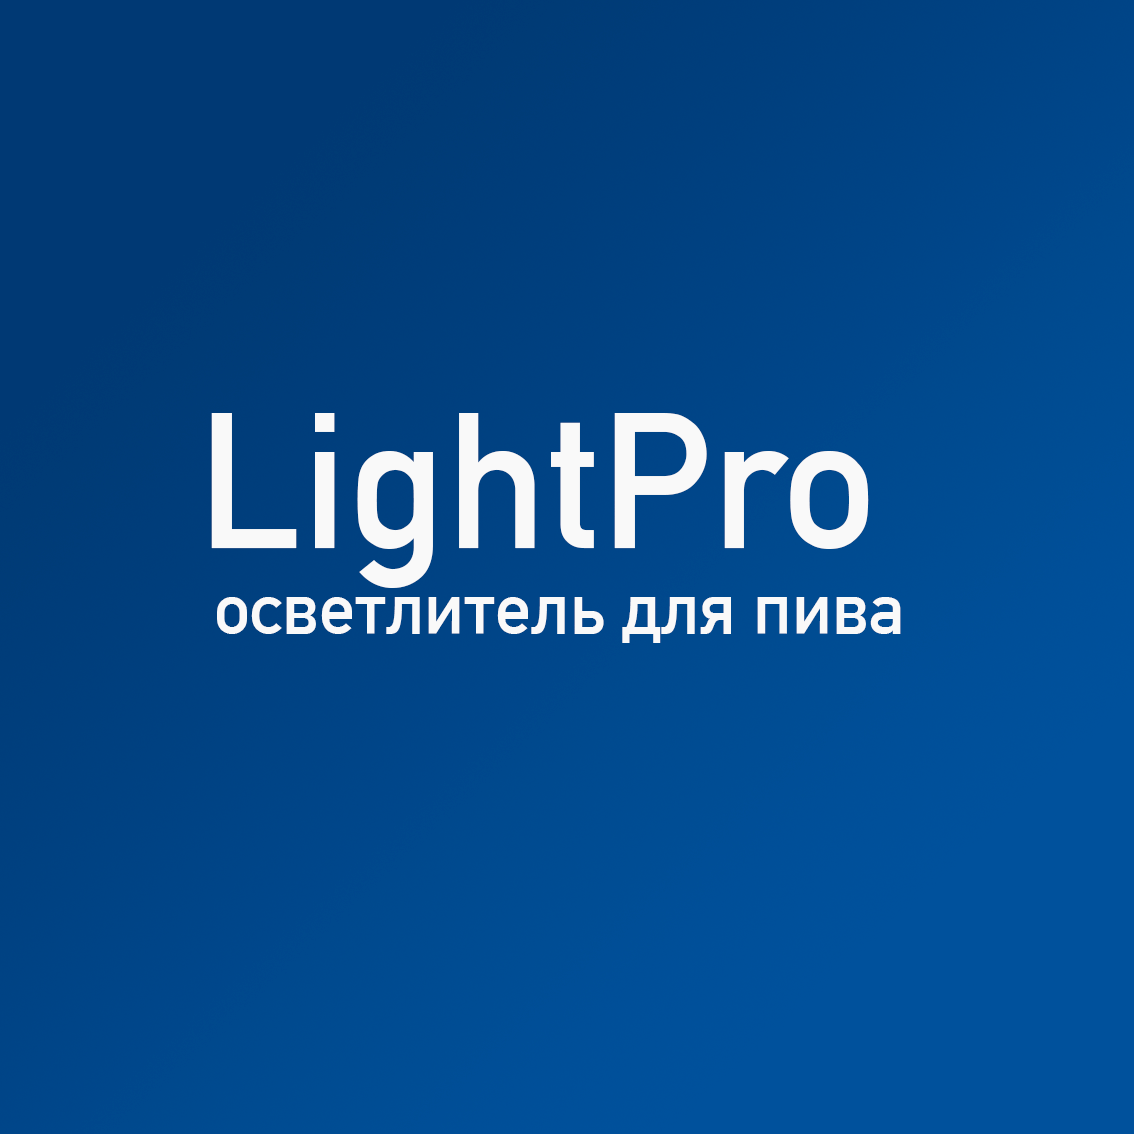 Купить LightPro осветлитель для пива